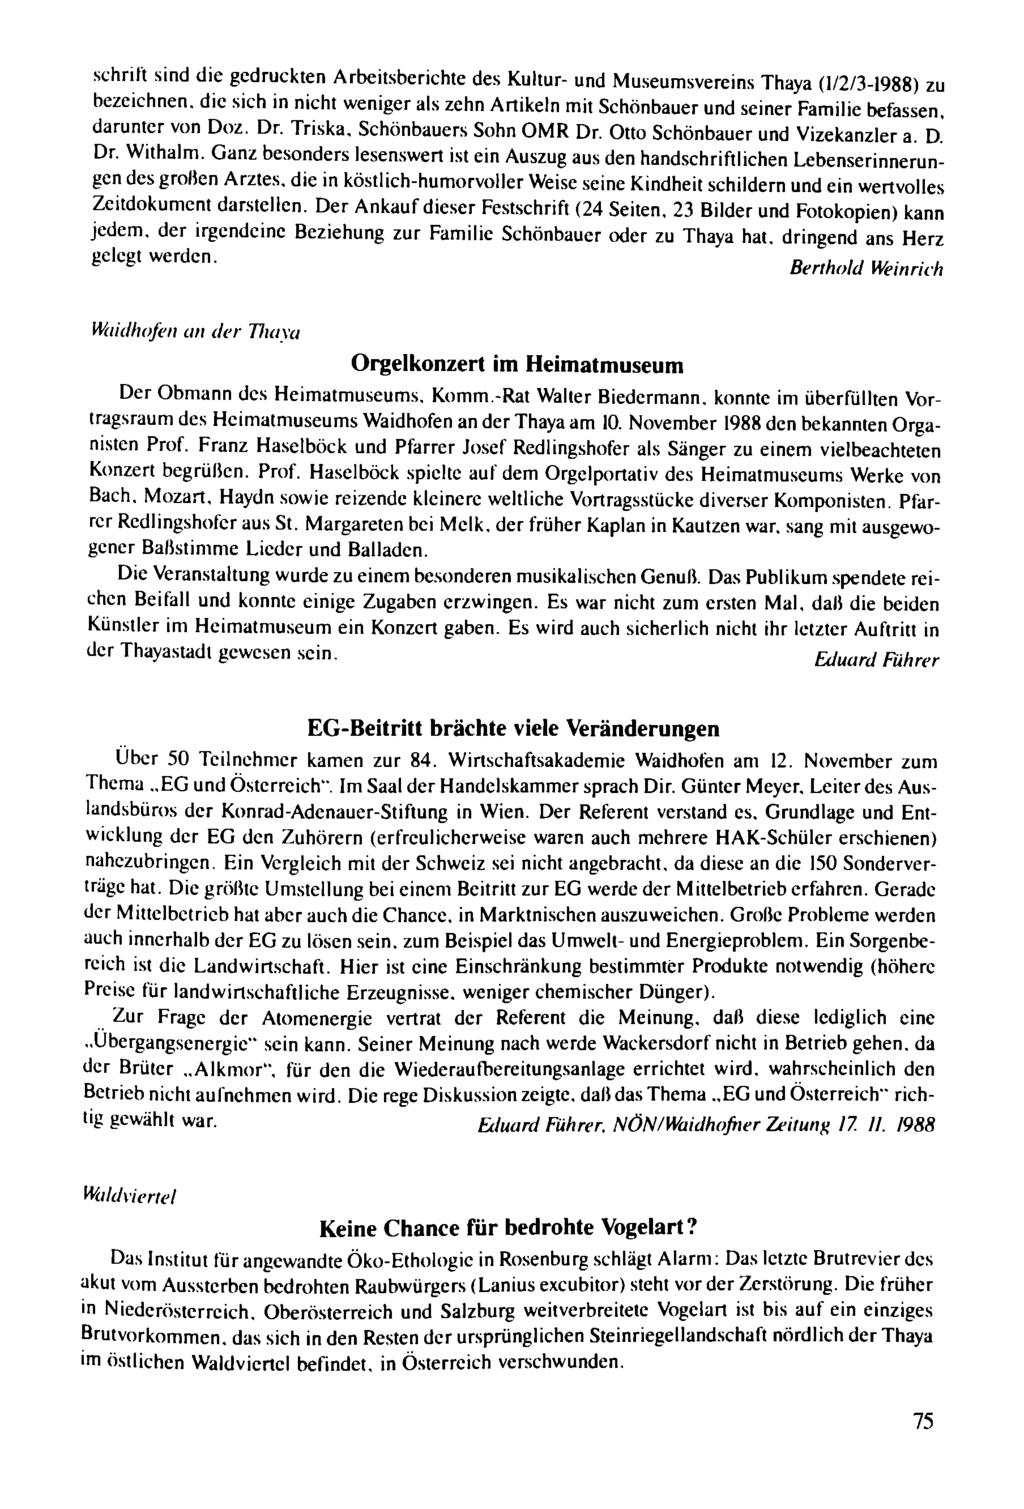 schrift sind die gedruckten Arbeitsberichte des Kultur- und Museumsvereins Thaya (1/213-1988) zu bezeichnen. die sich in nicht weniger als zehn Artikeln mit Schönbauer und seiner Familie befassen.